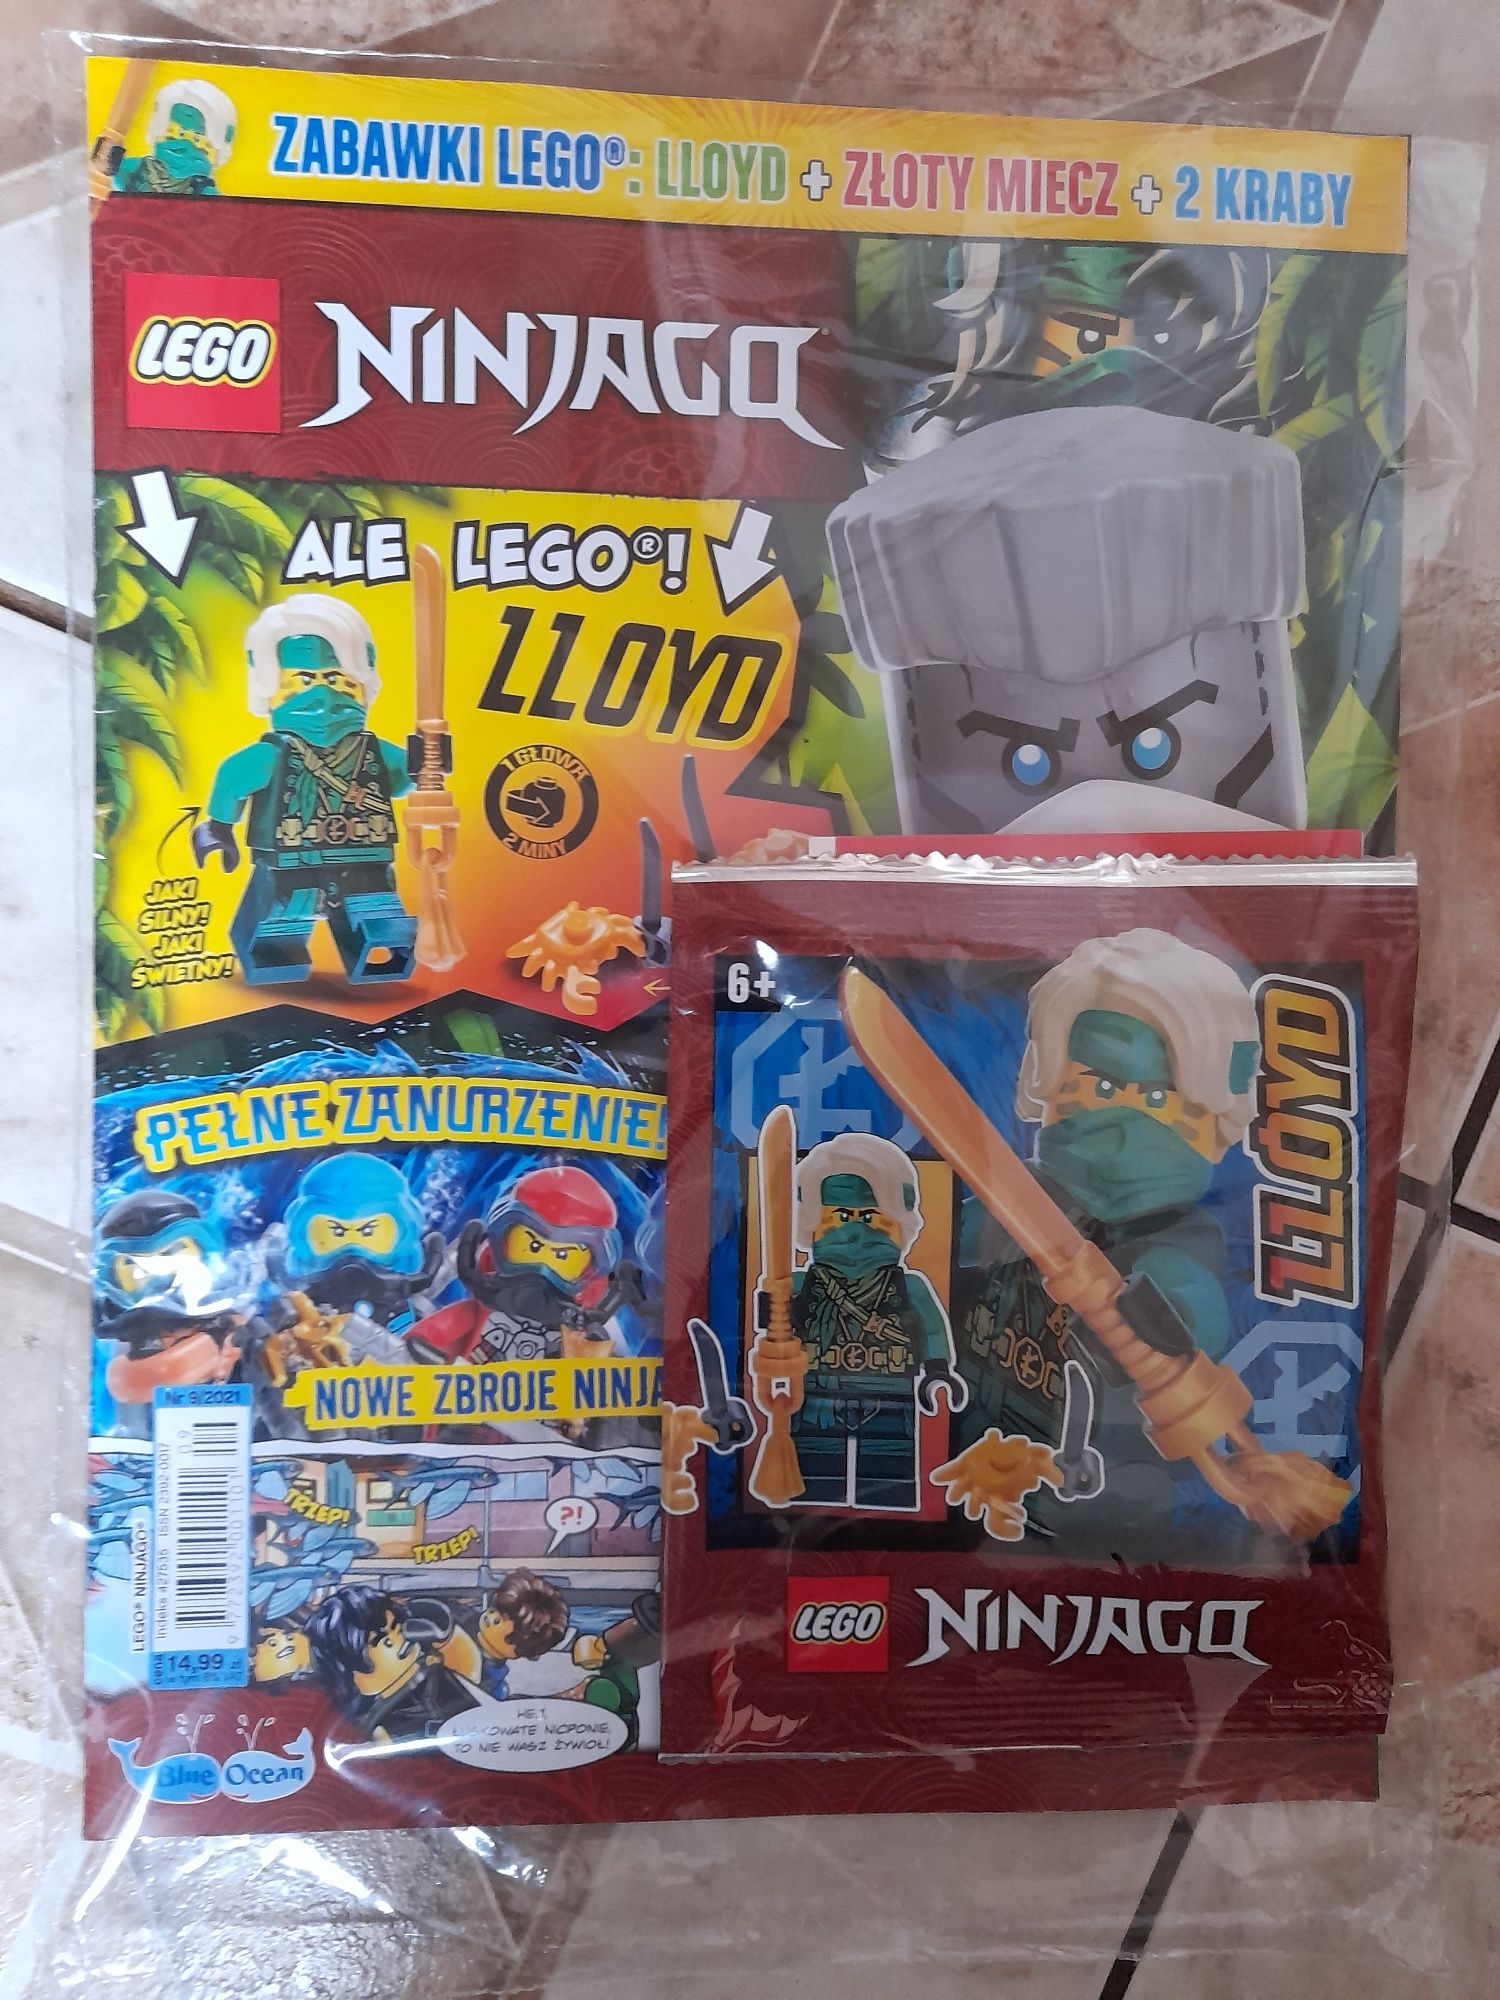 Gazetki Lego Ninjago 09.2021 -NOWE